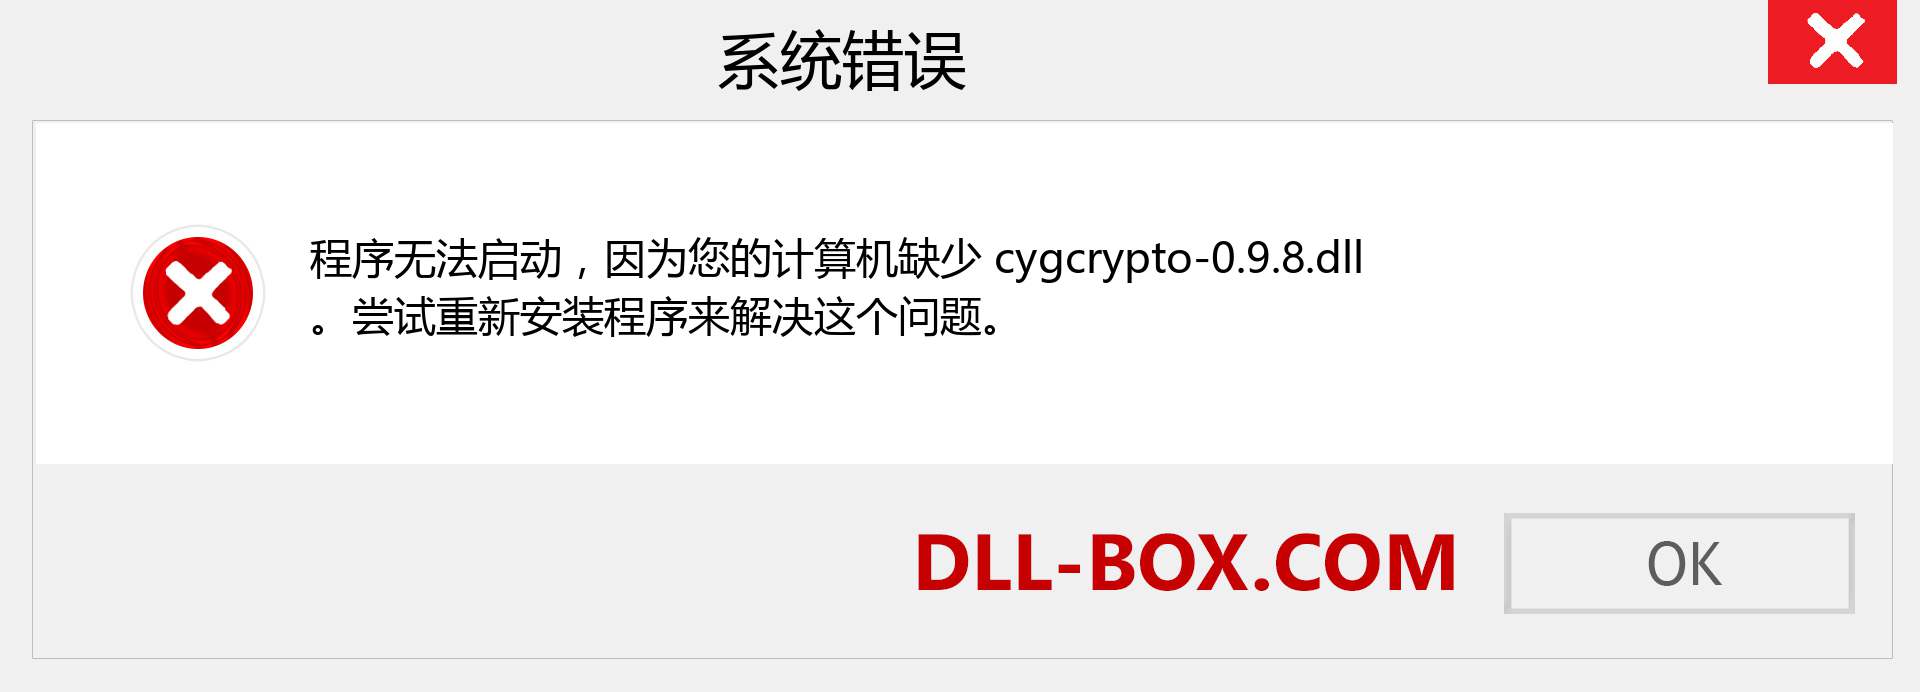 cygcrypto-0.9.8.dll 文件丢失？。 适用于 Windows 7、8、10 的下载 - 修复 Windows、照片、图像上的 cygcrypto-0.9.8 dll 丢失错误